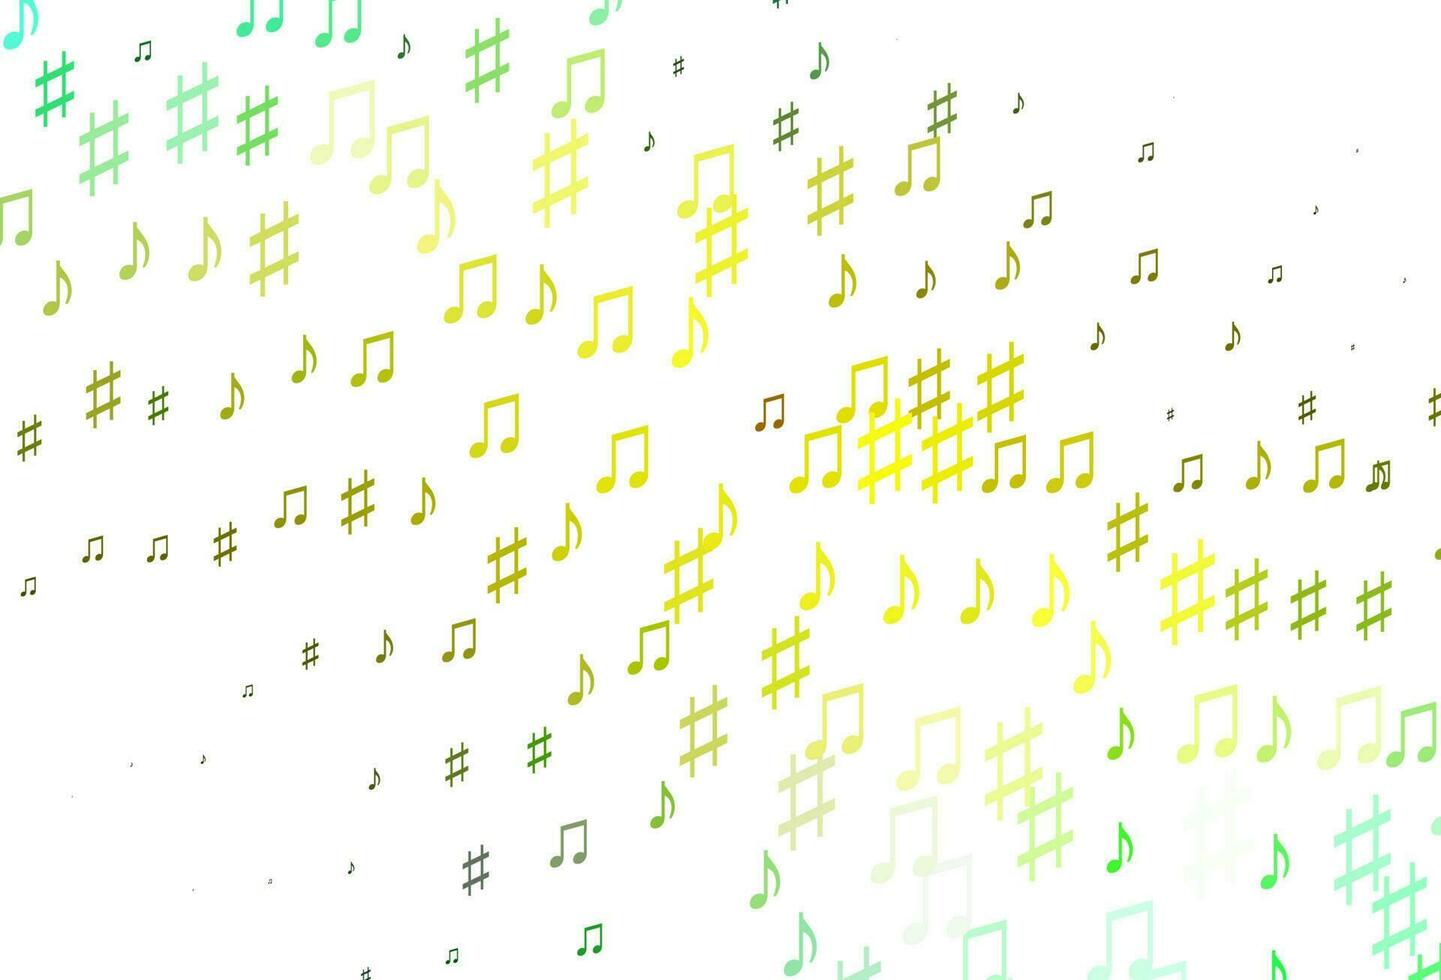 textura de vetor verde e amarelo claro com notas musicais.